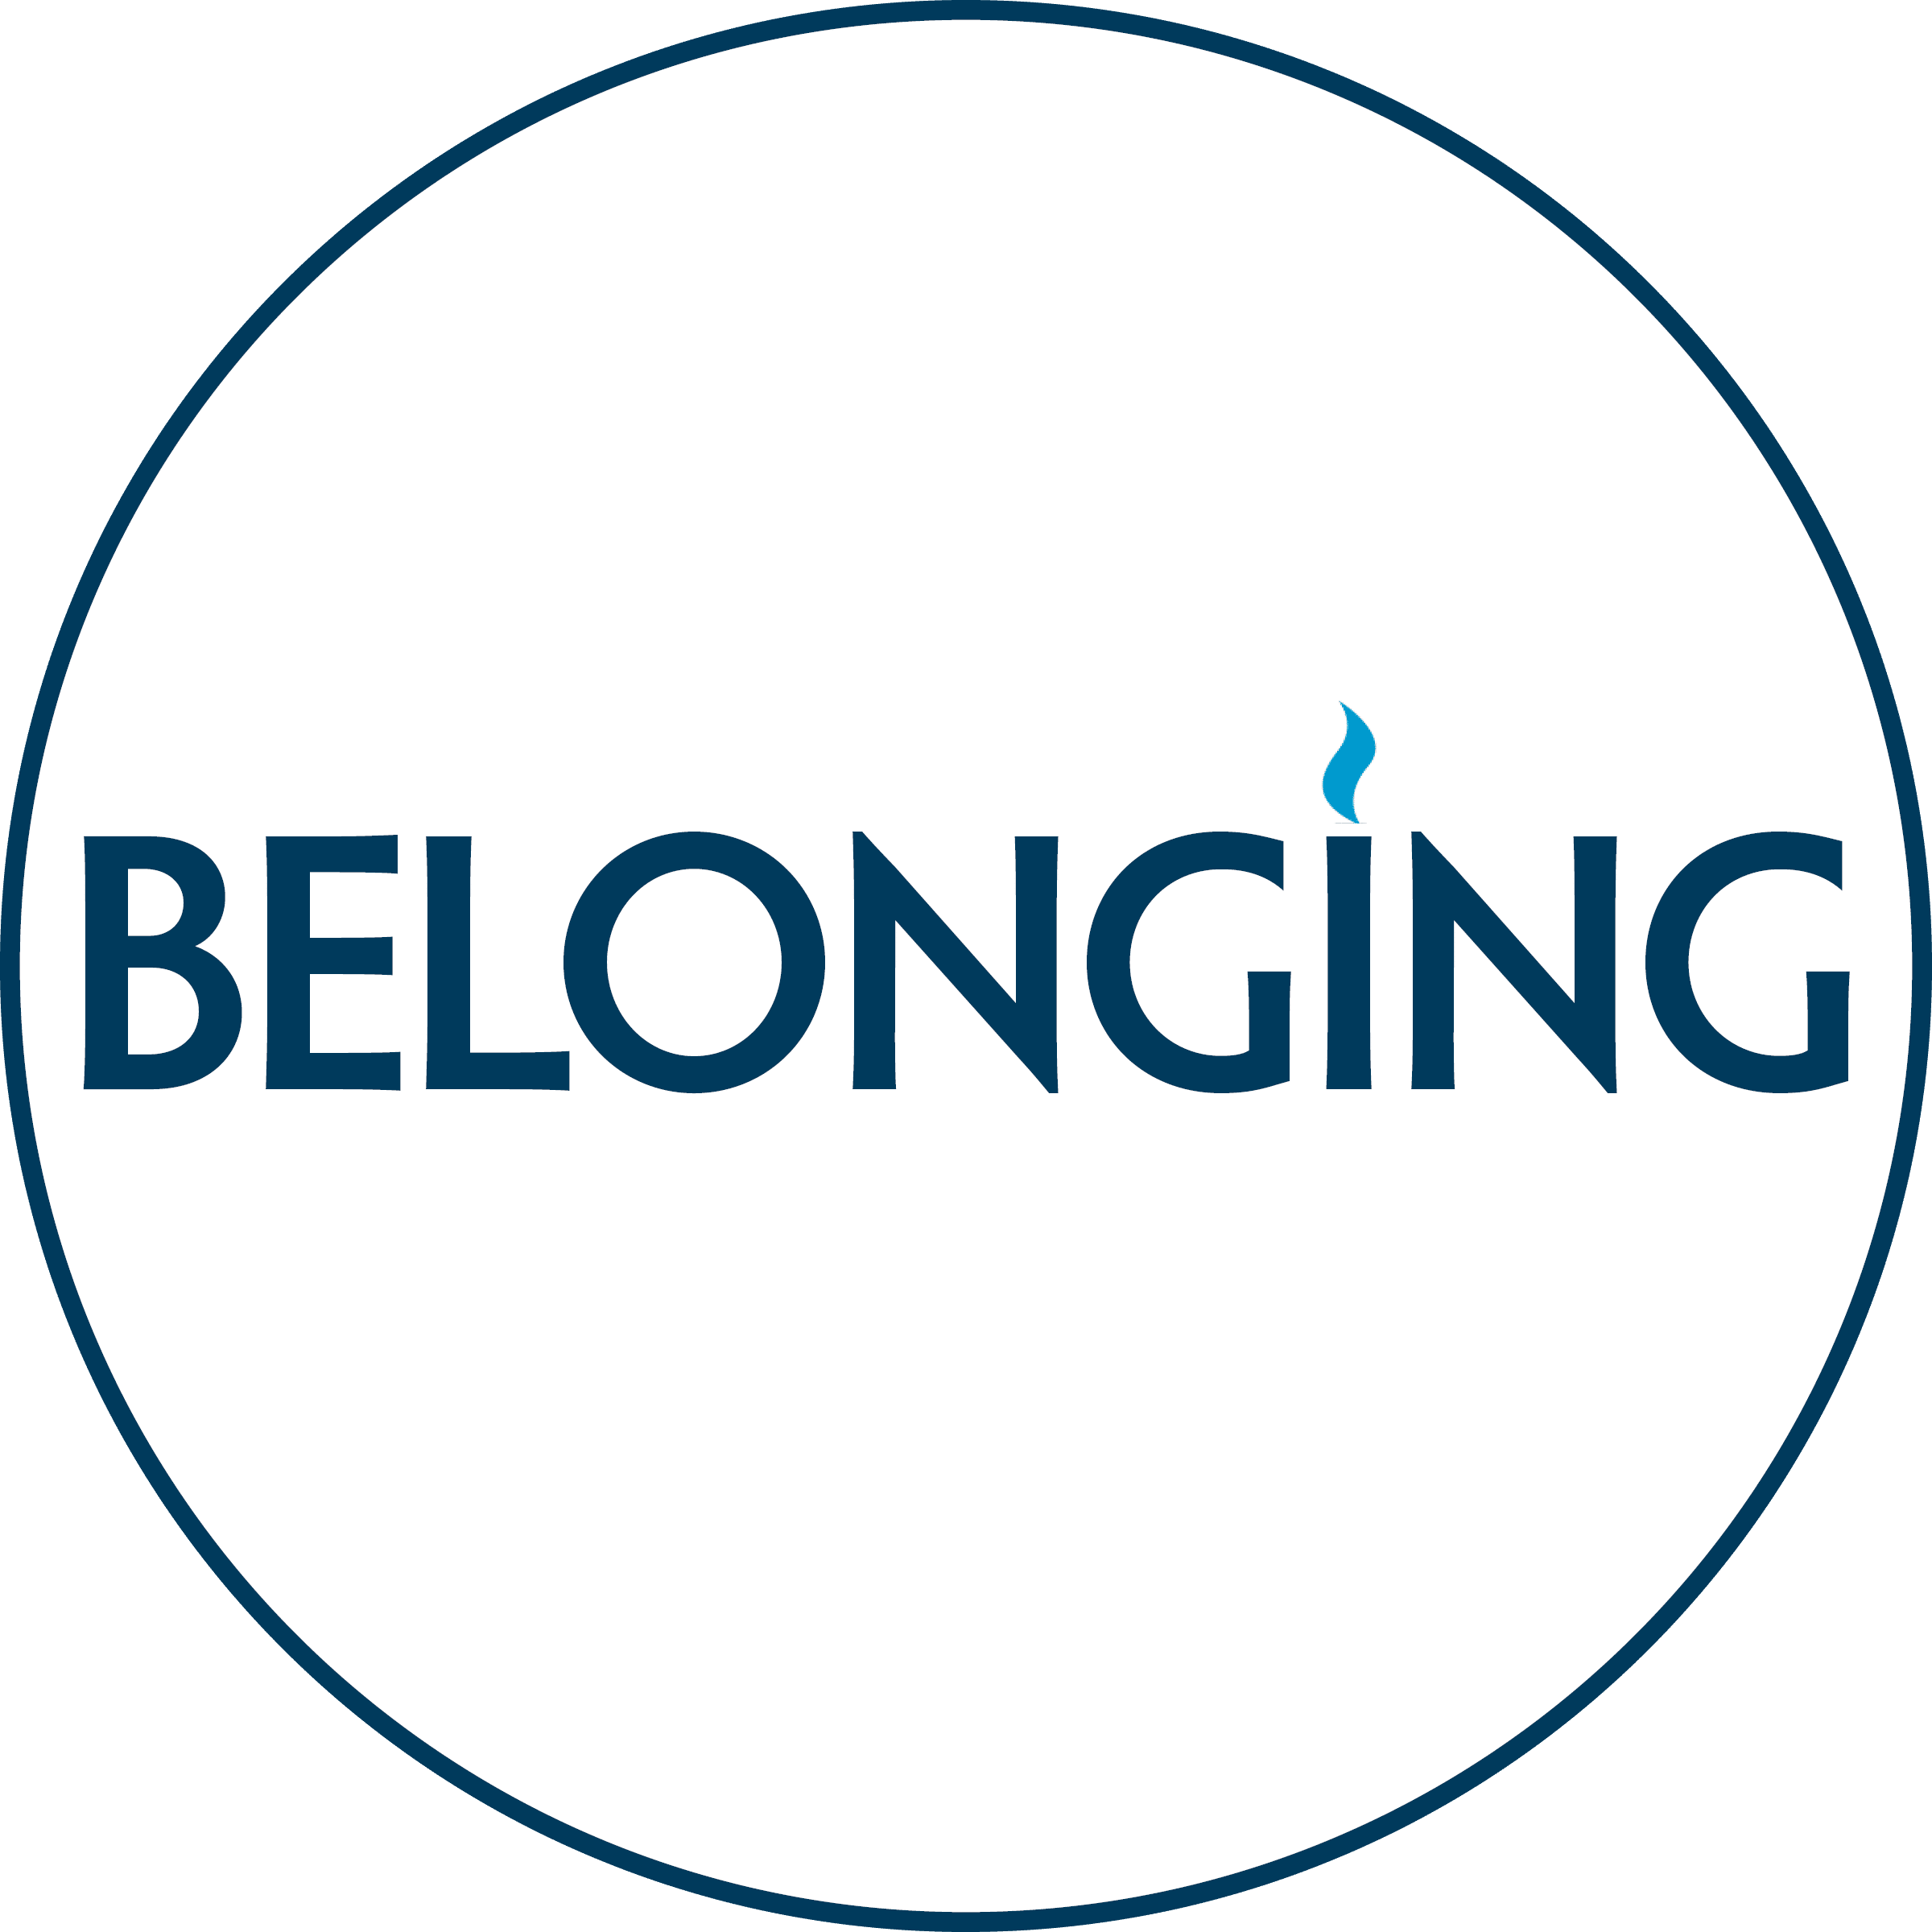 Belonging - Belonging Circle